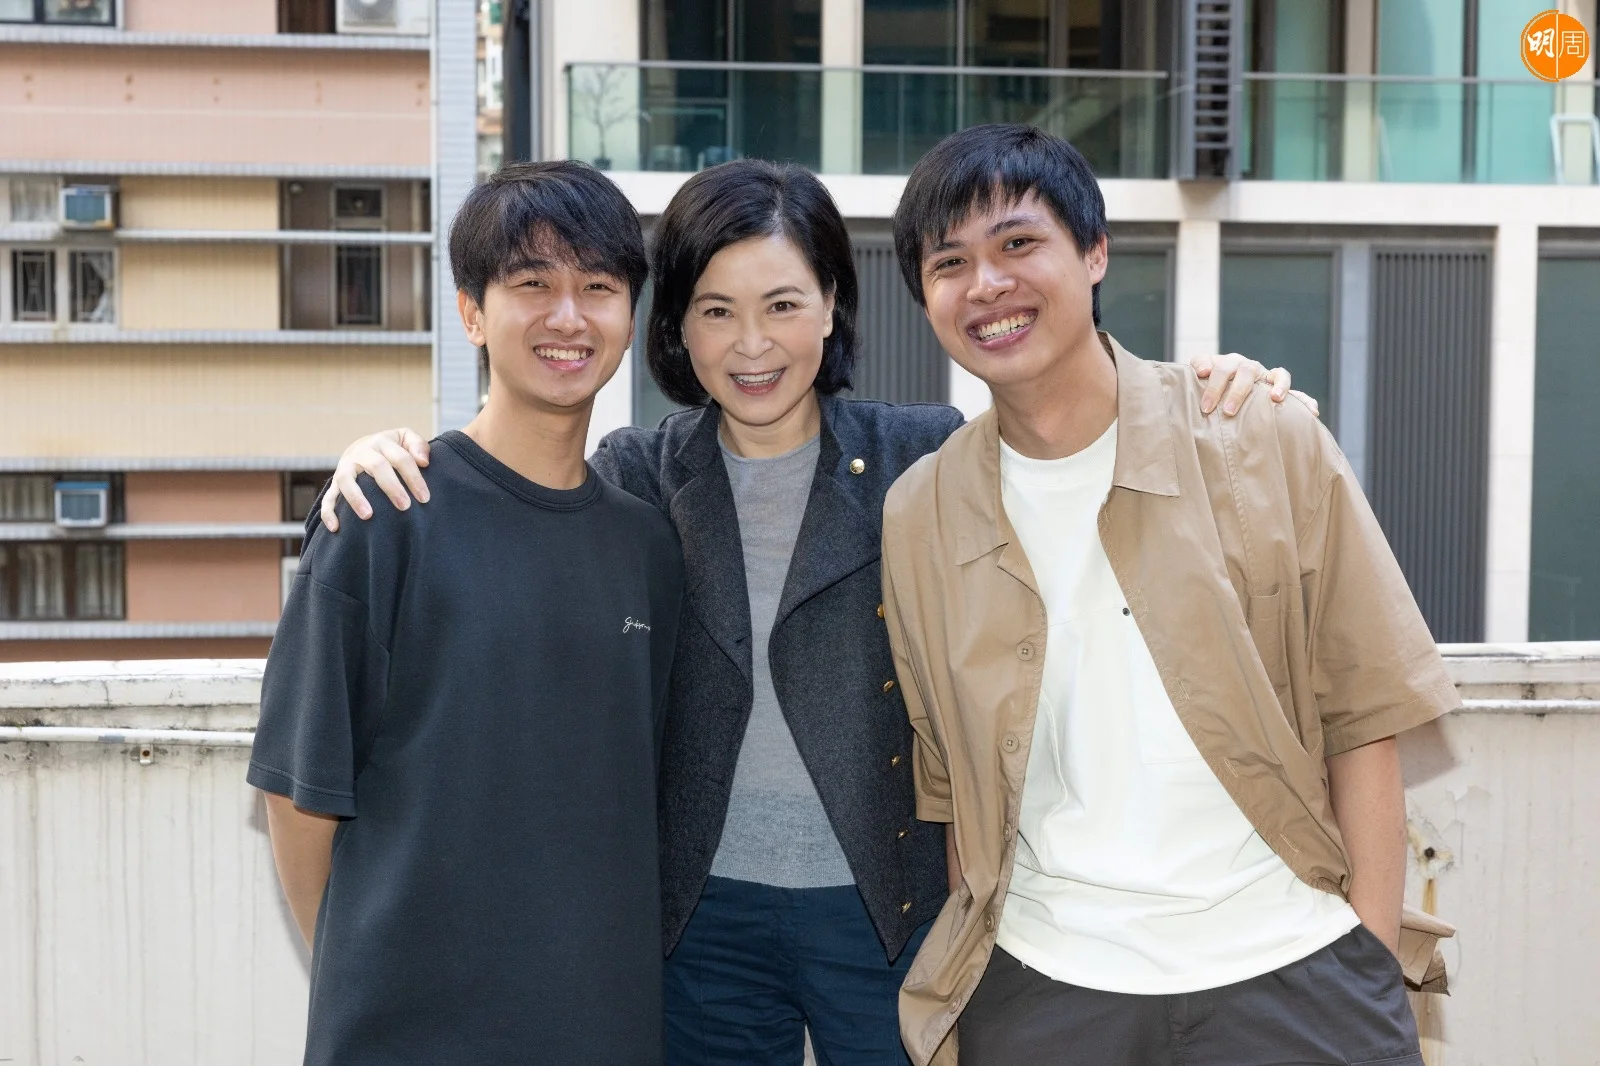 蘇王華與兩位新導演。